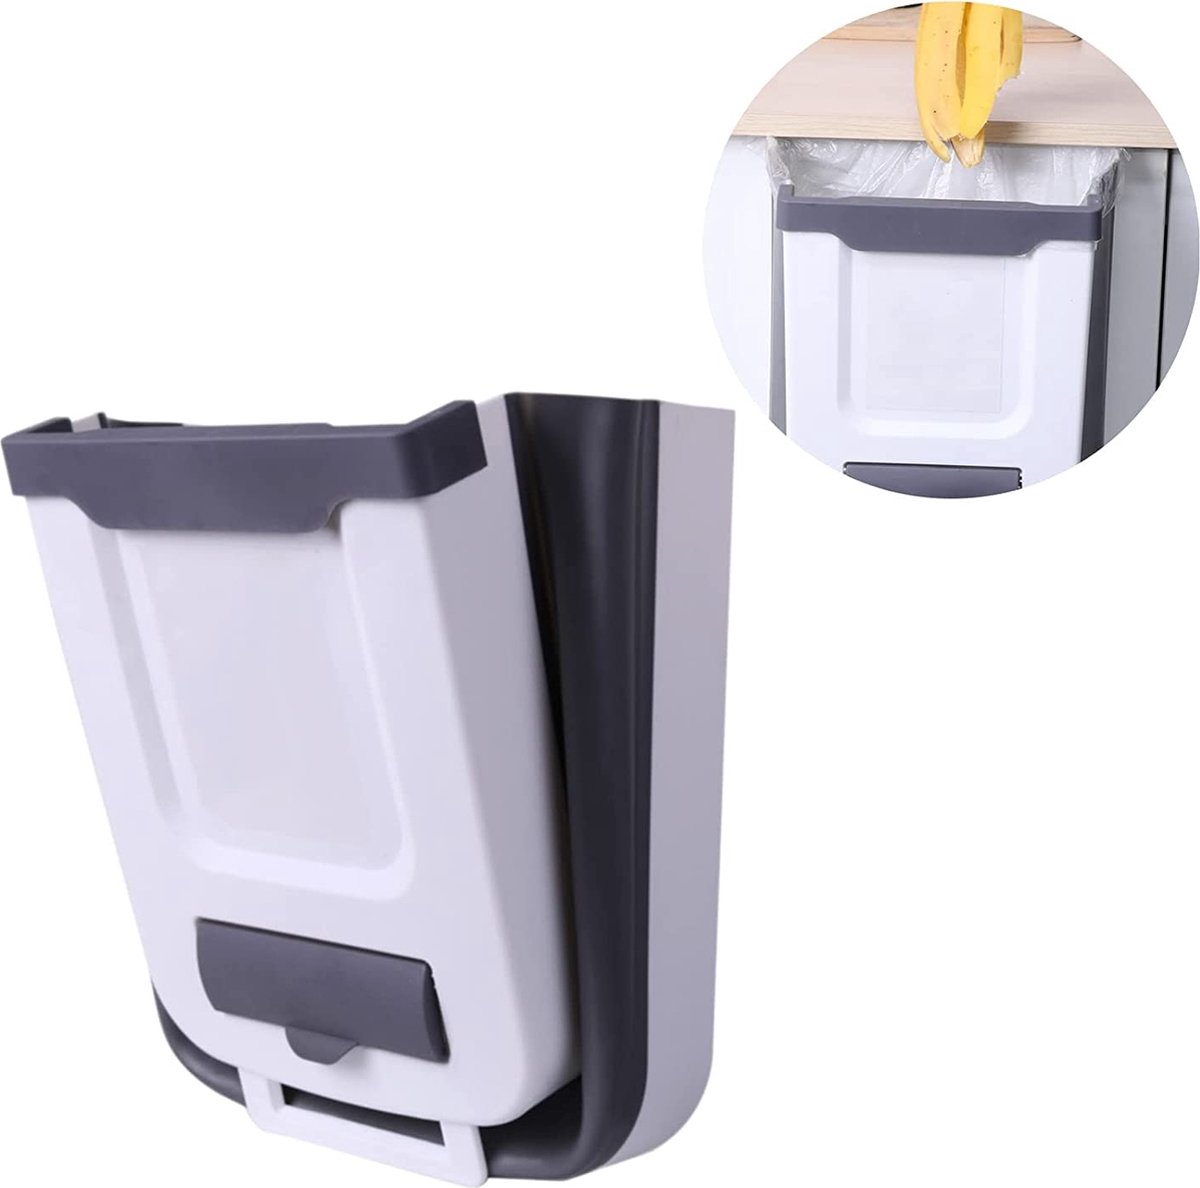 Petite poubelle de cuisine suspendue, mini poubelle pliable pour armoire /  voiture / chambre / salle de bain, plastique, blanc, 2,4 gallons